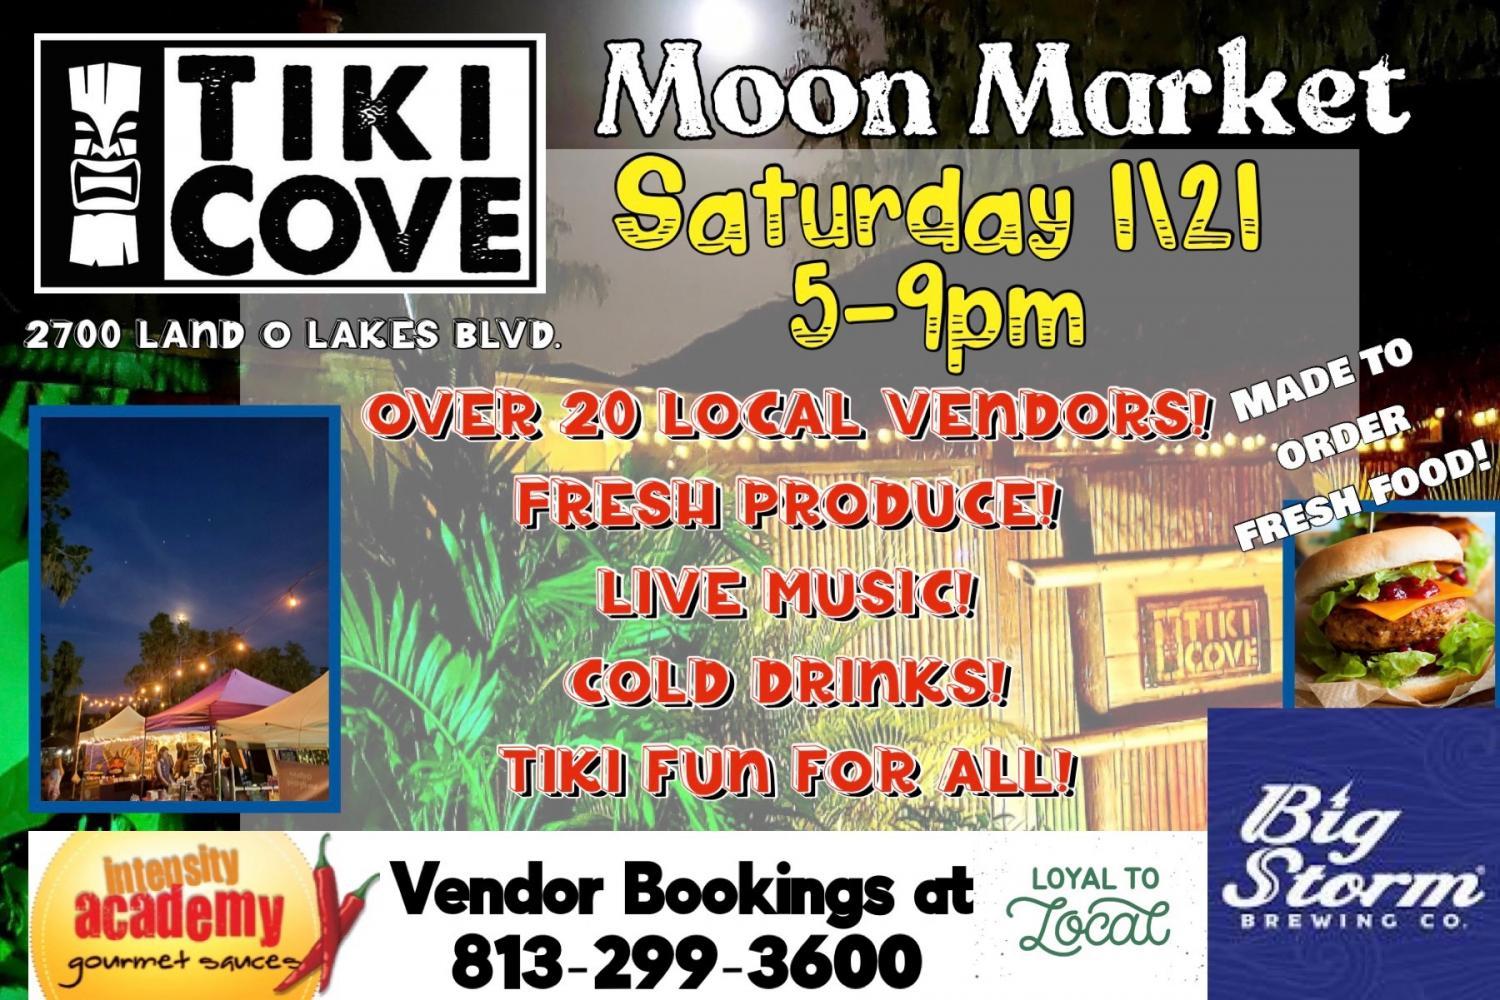 Moon Market At Tiki Cove!